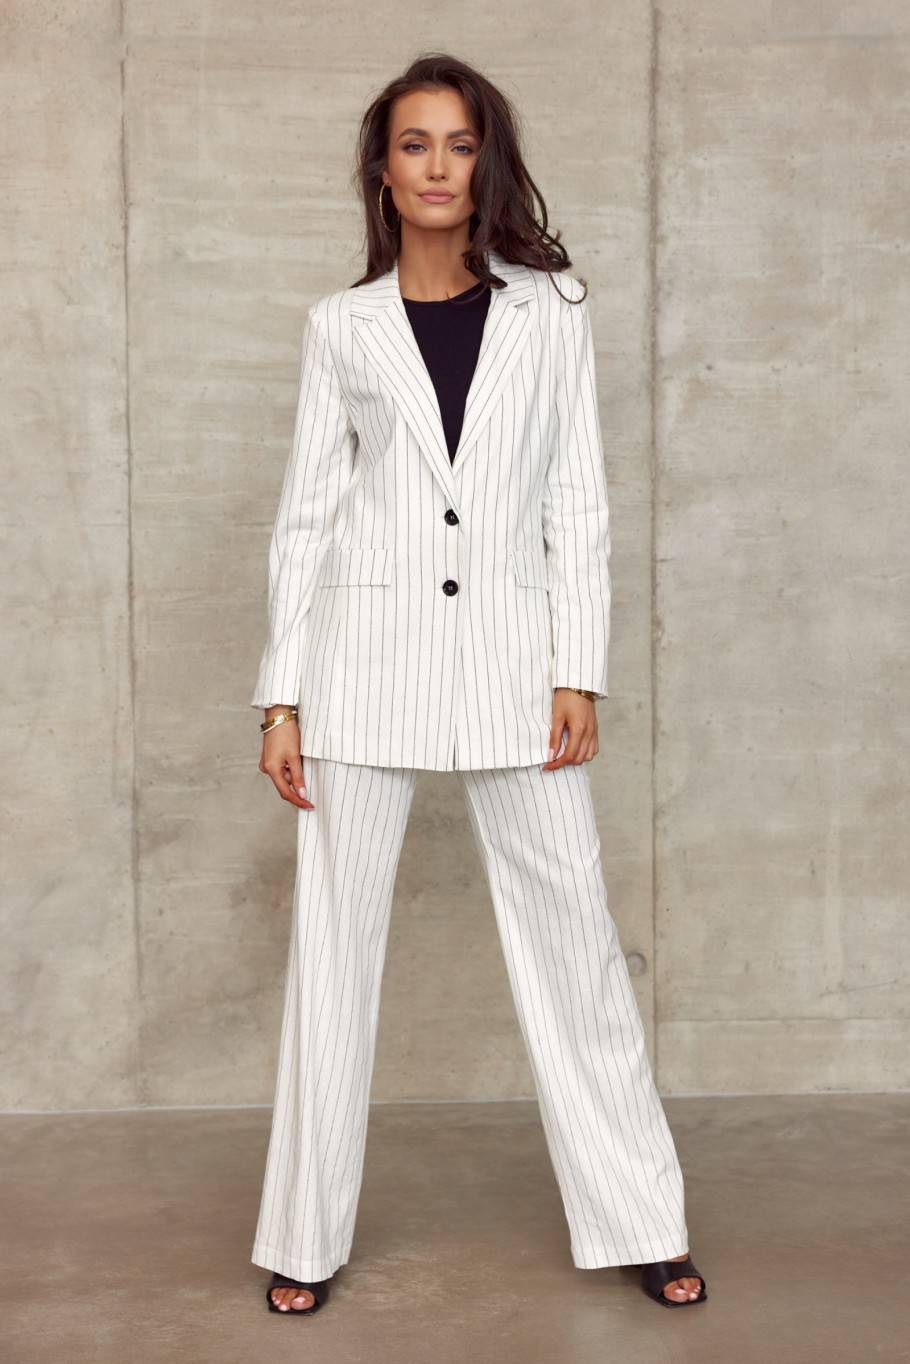 Women's striped linen jacket EKR